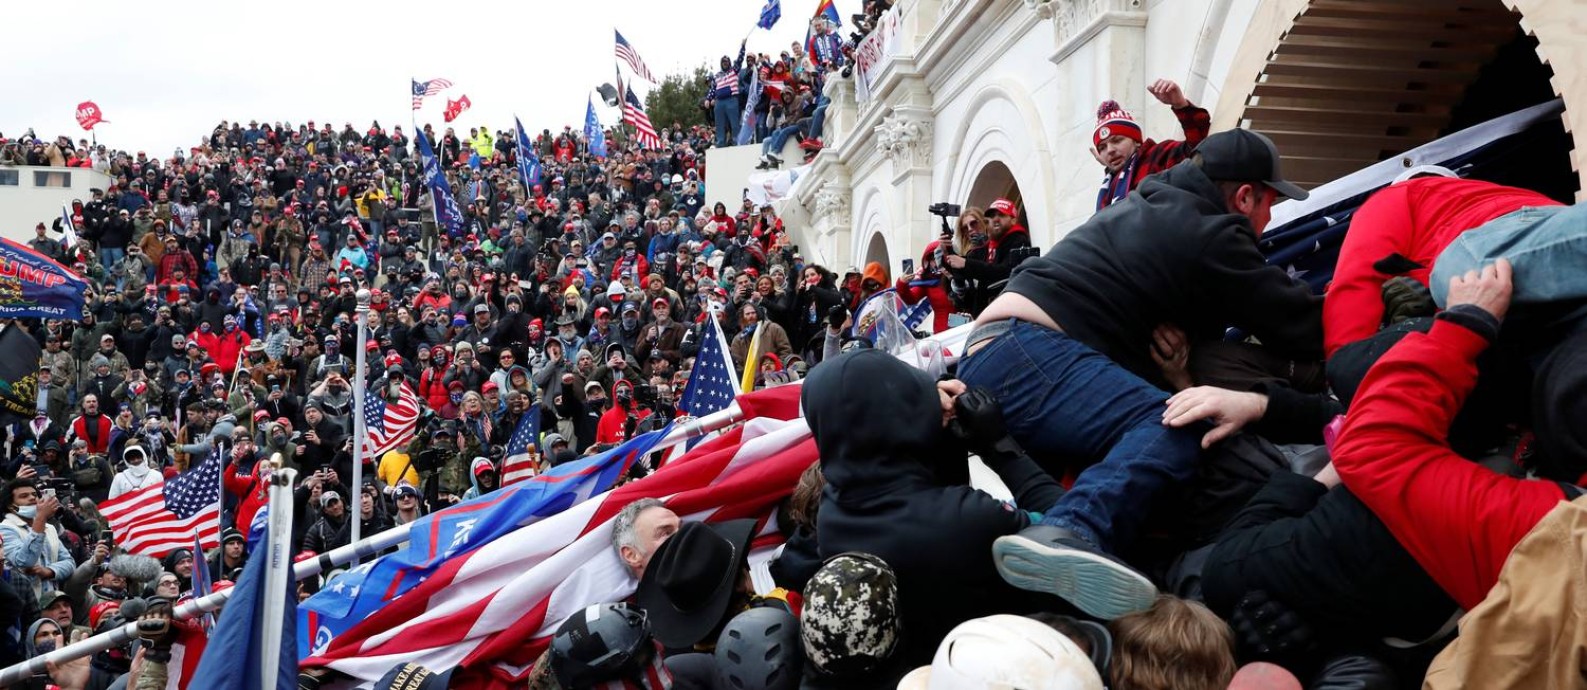 Apoiadores do presidente Donald Trump invadem o Capitólio em 6 de janeiro Foto: Shannon Stapleton / Reuters